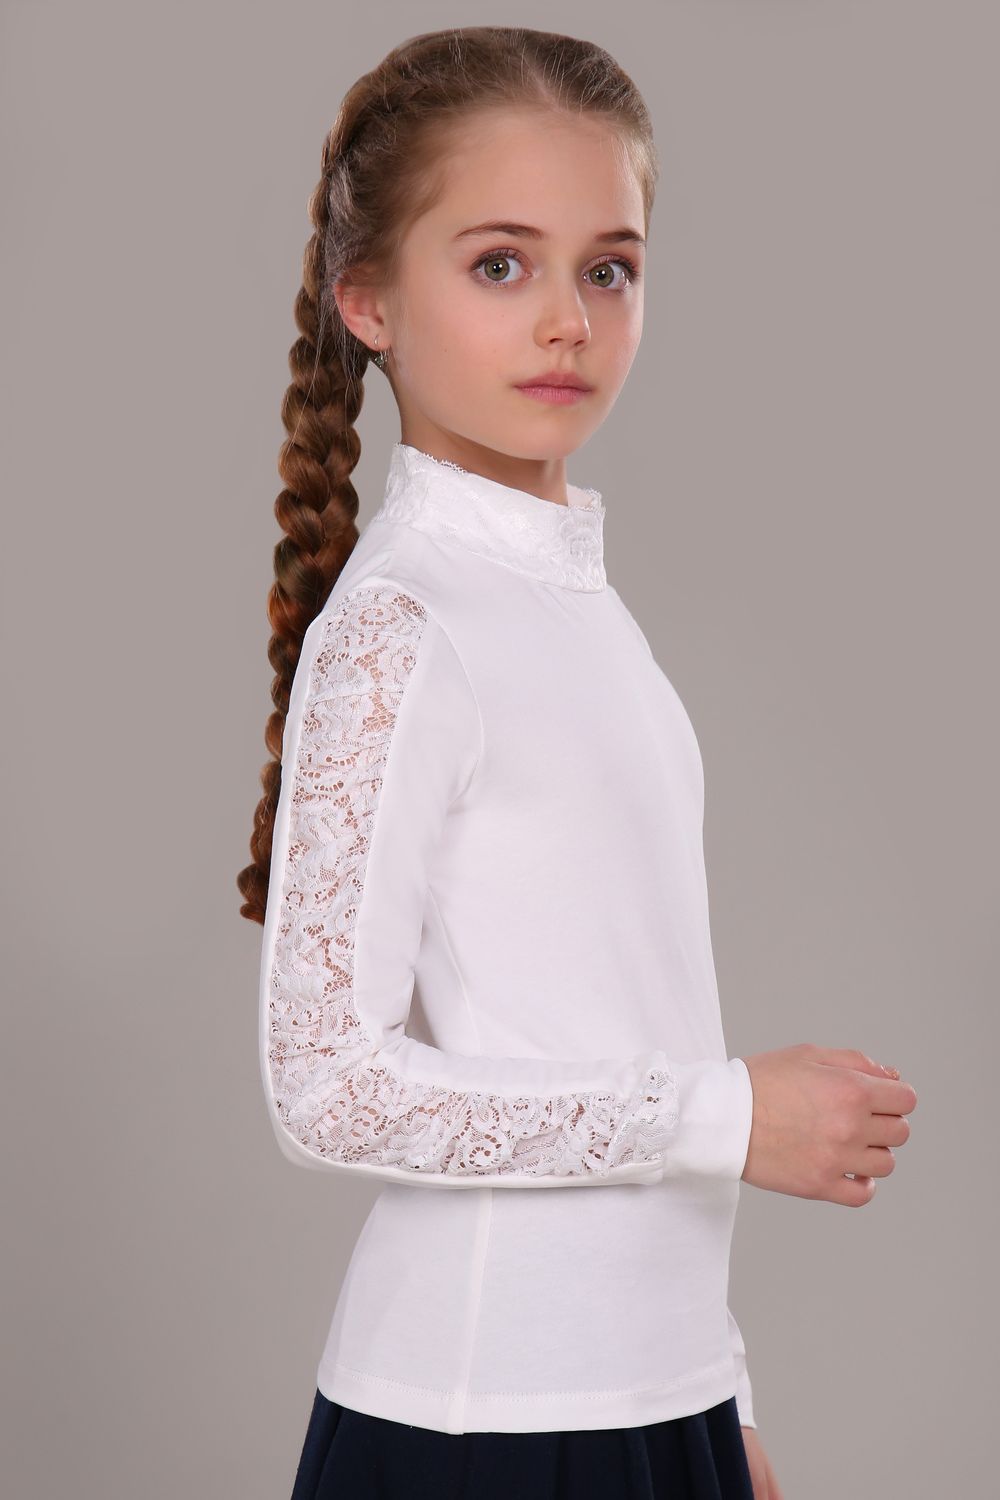 Блузка для девочки Каролина New арт.13118N - крем